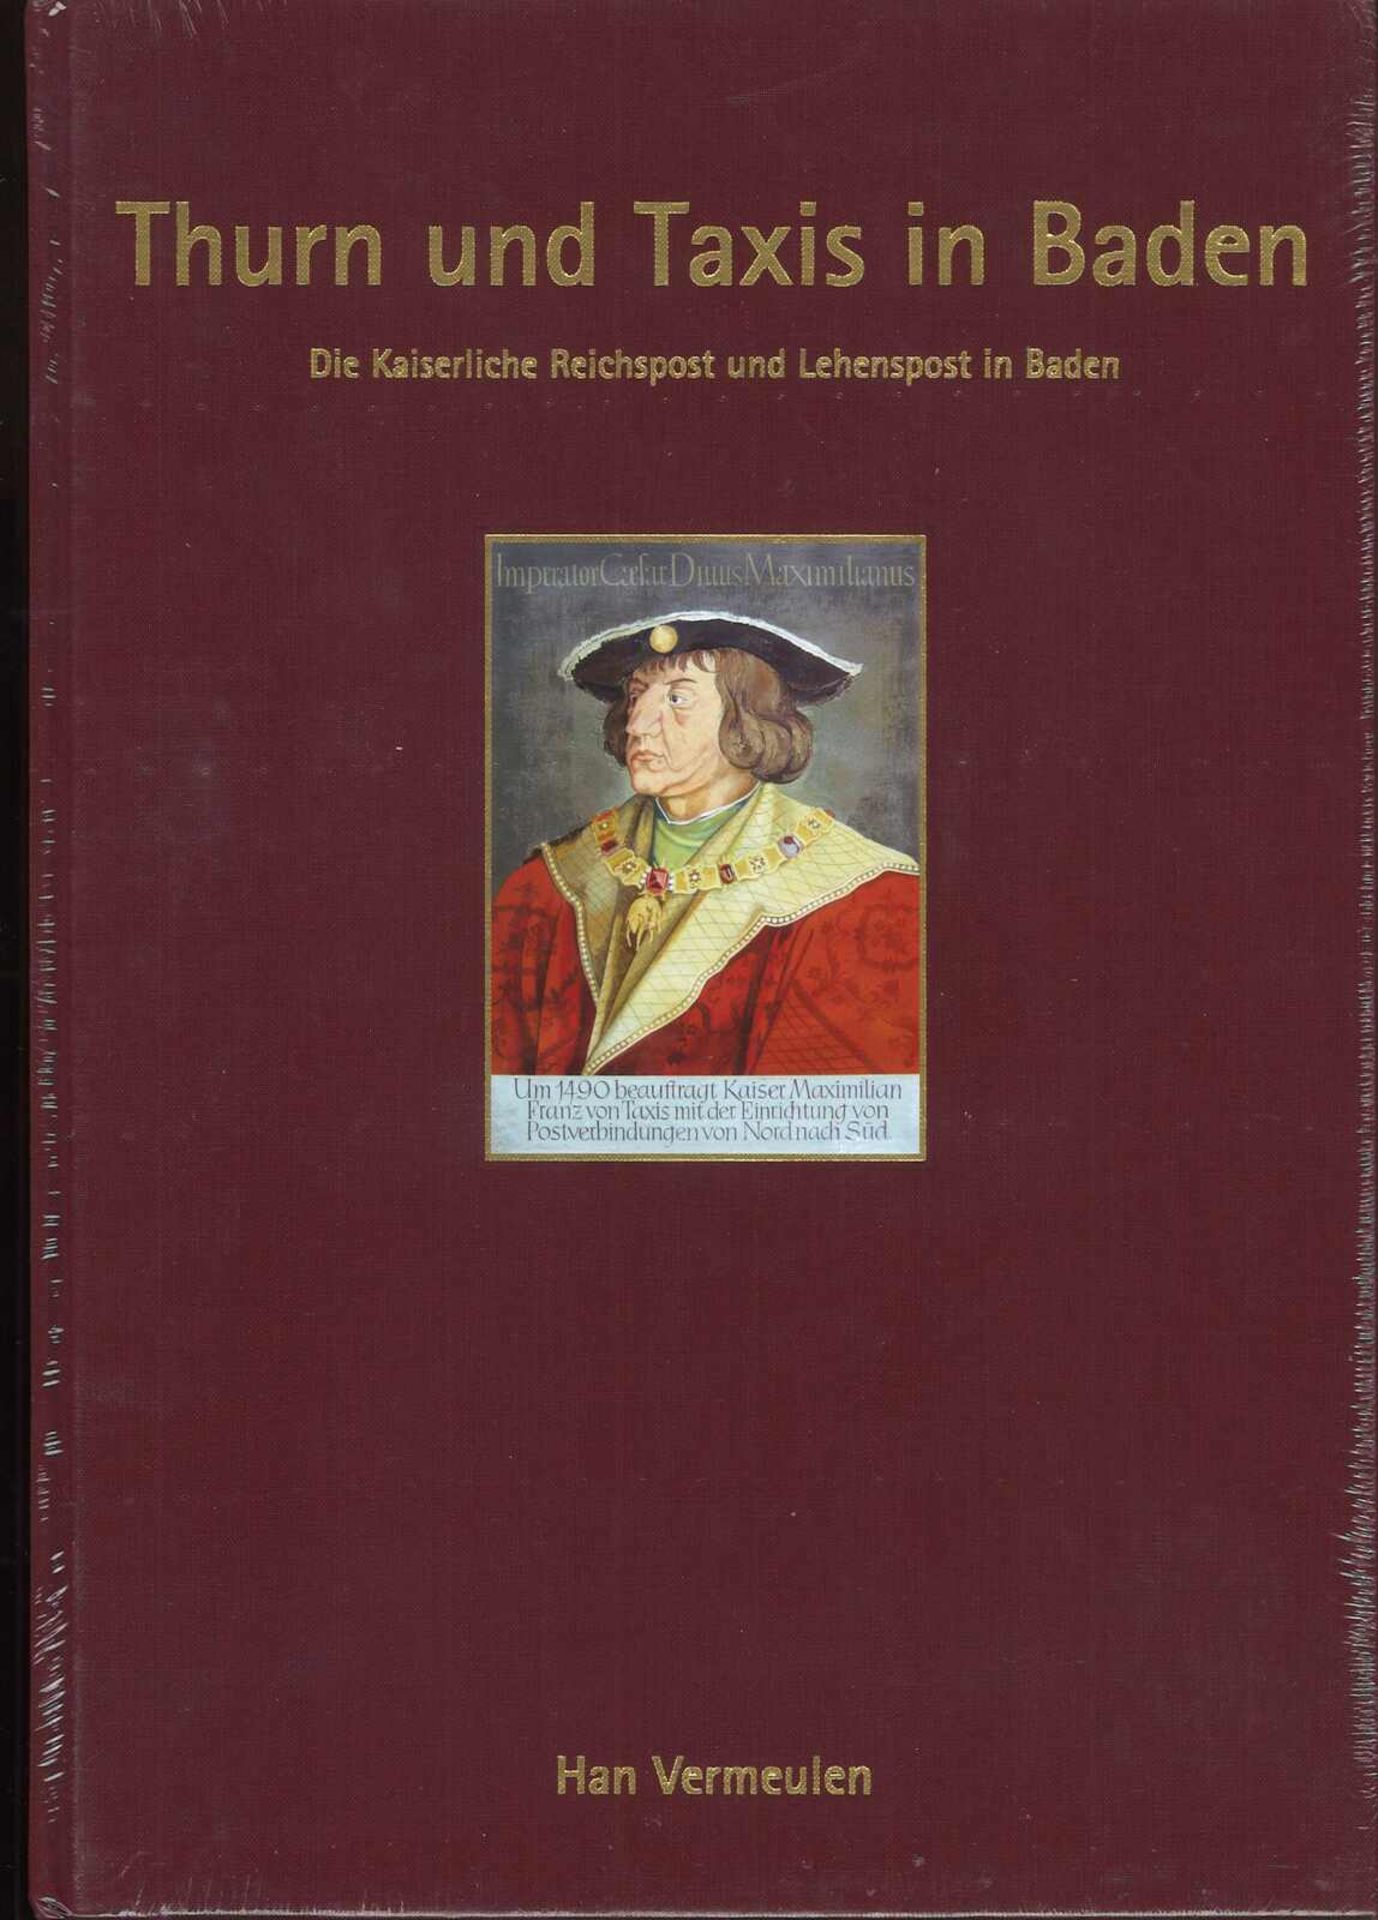 Thurn und Taxis in Baden von Han Vermeulen "Die Kaiserliche Reichspost und Lehenspost in Baden", in